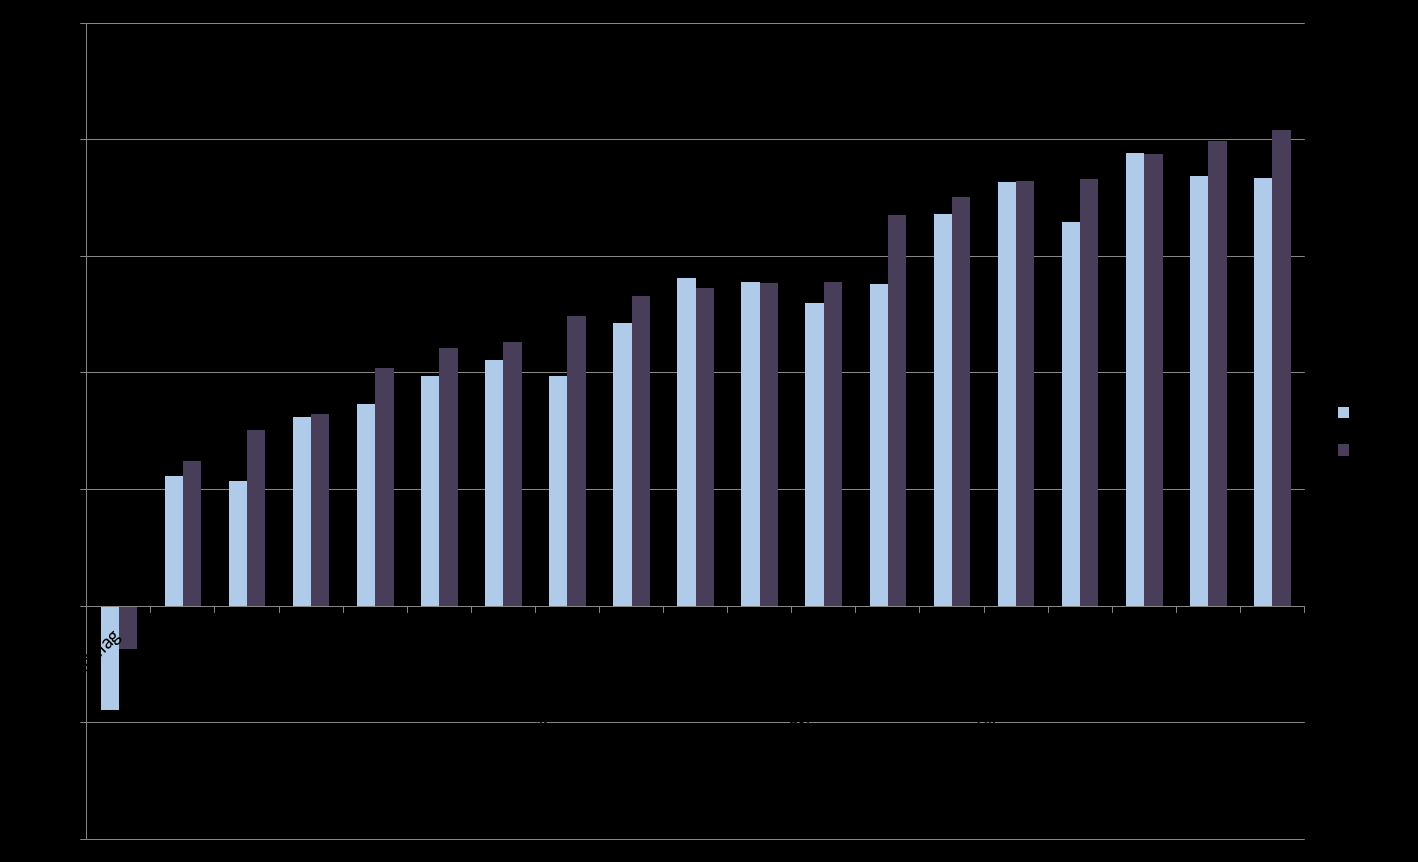 1.1.4 Rente- og avdragsutgifter Diagram 2: Utviklingen i samlet gjeld. Horten vgs er innarbeidet i perioden 2015-2018 og forklarer økningen fra 2016.